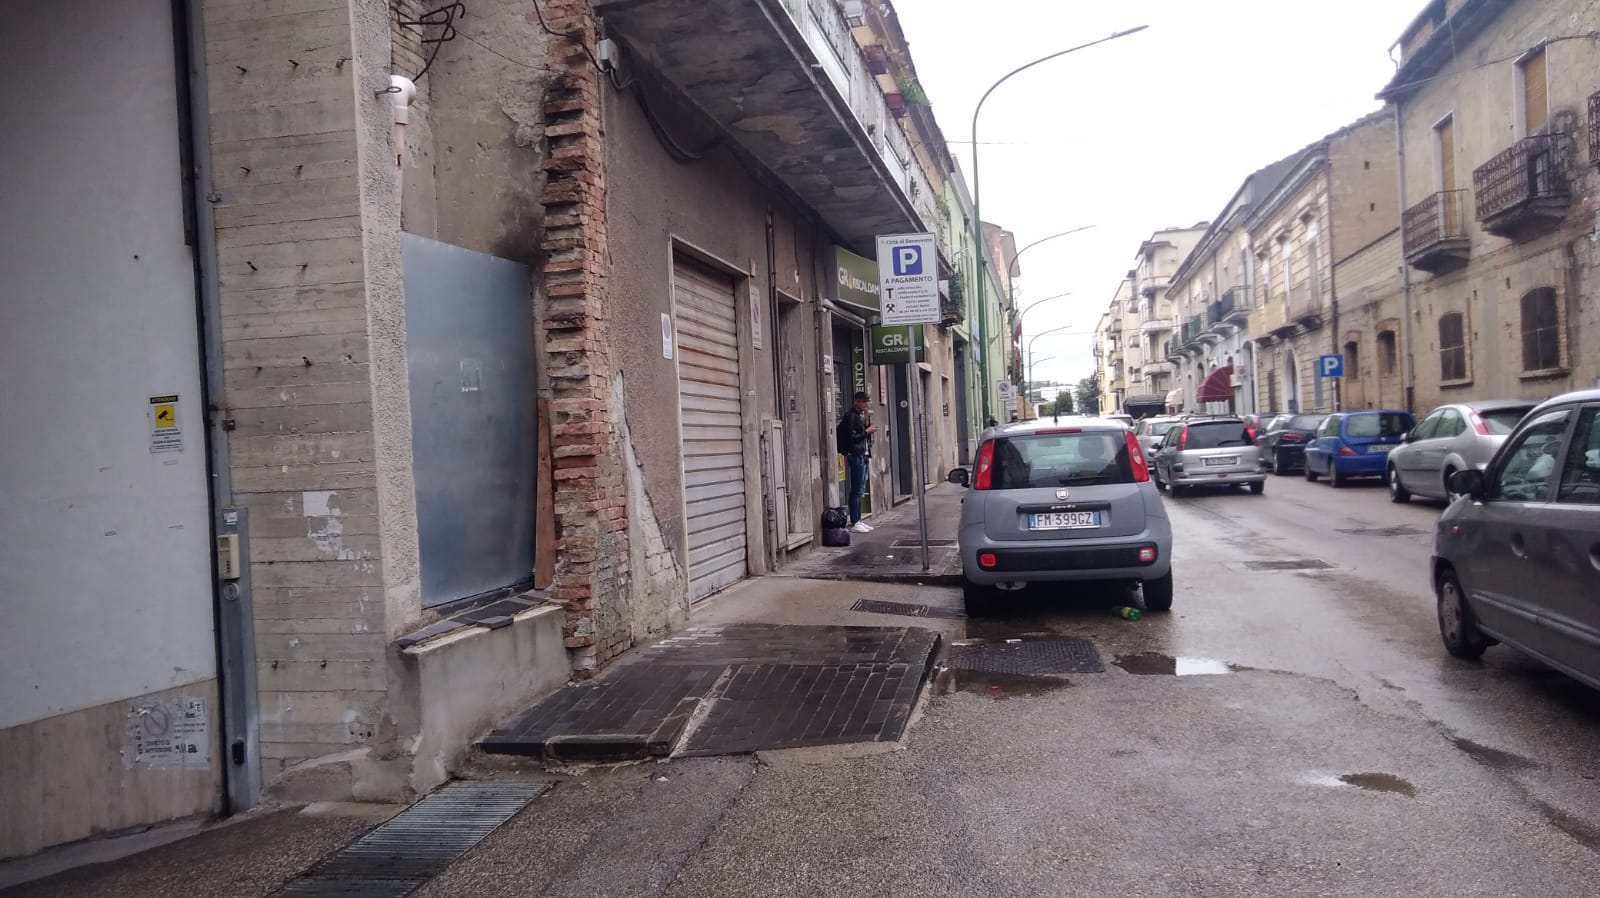 Benevento| Proiettili contro saracinesca di un negozio, indaga la Polizia